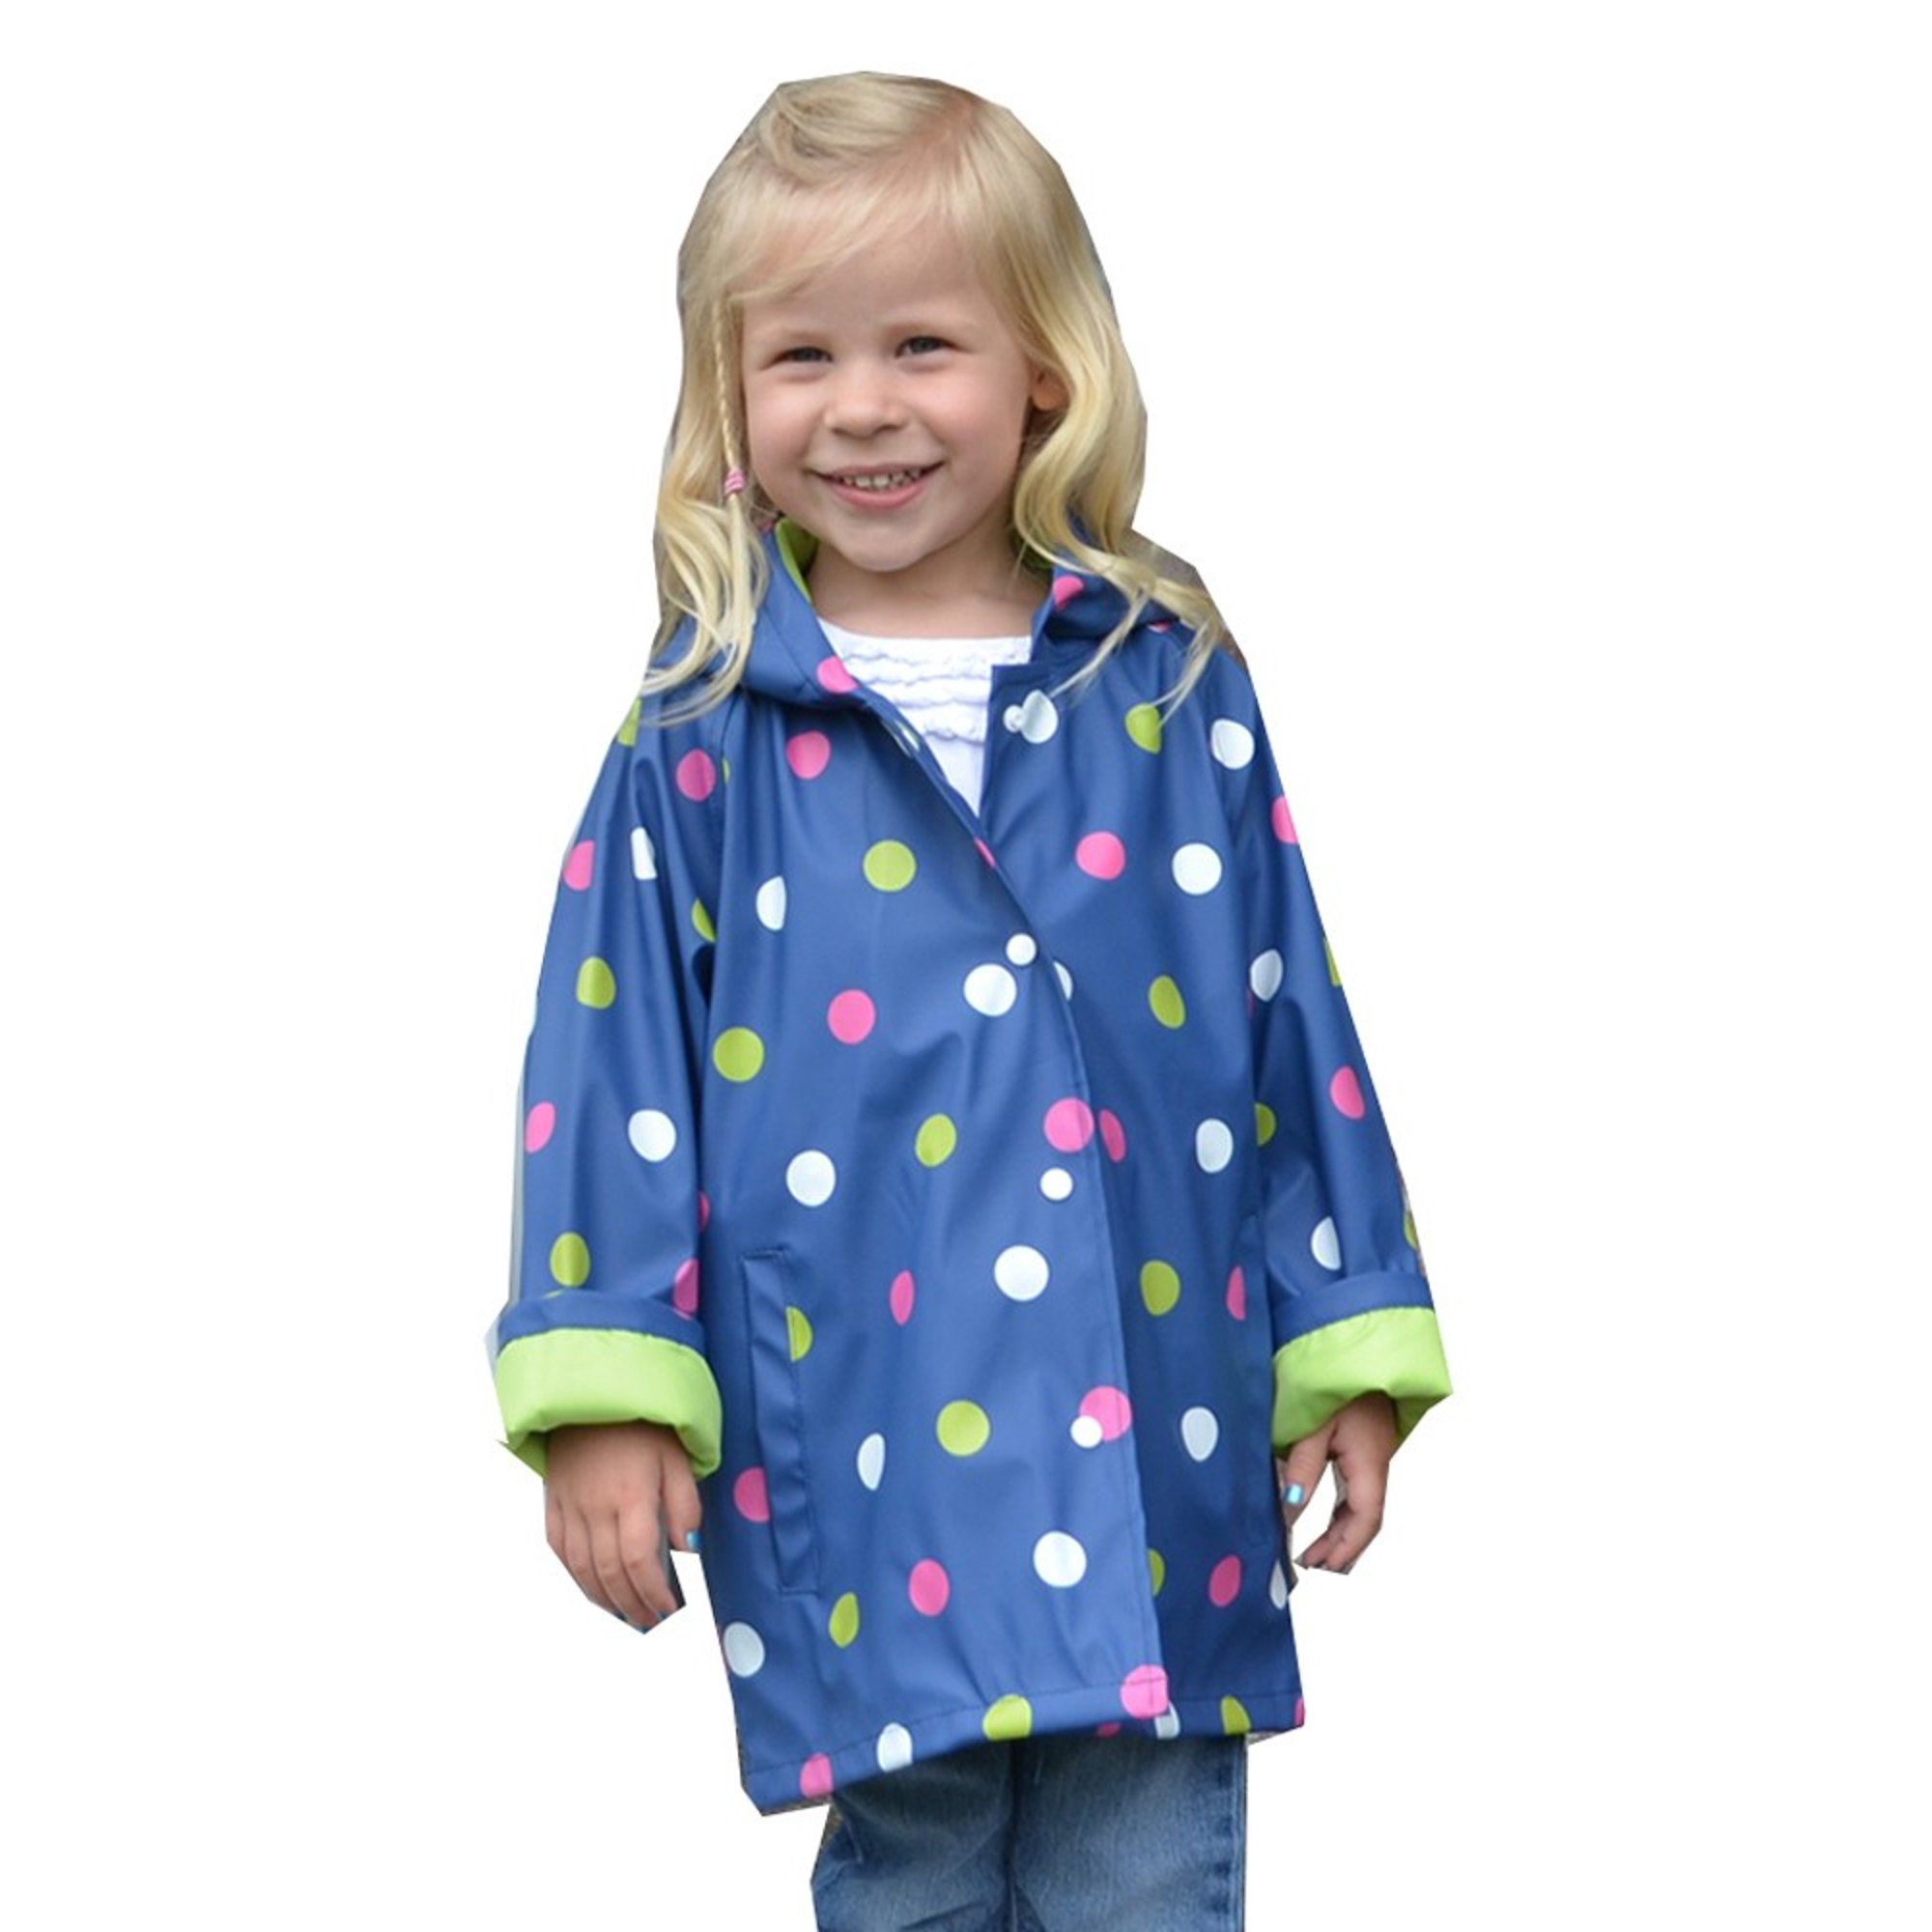 Foxfire FOX-601-25-3T Childrens Navy Polka Dot Raincoat - Size 3T | Walmart (US)